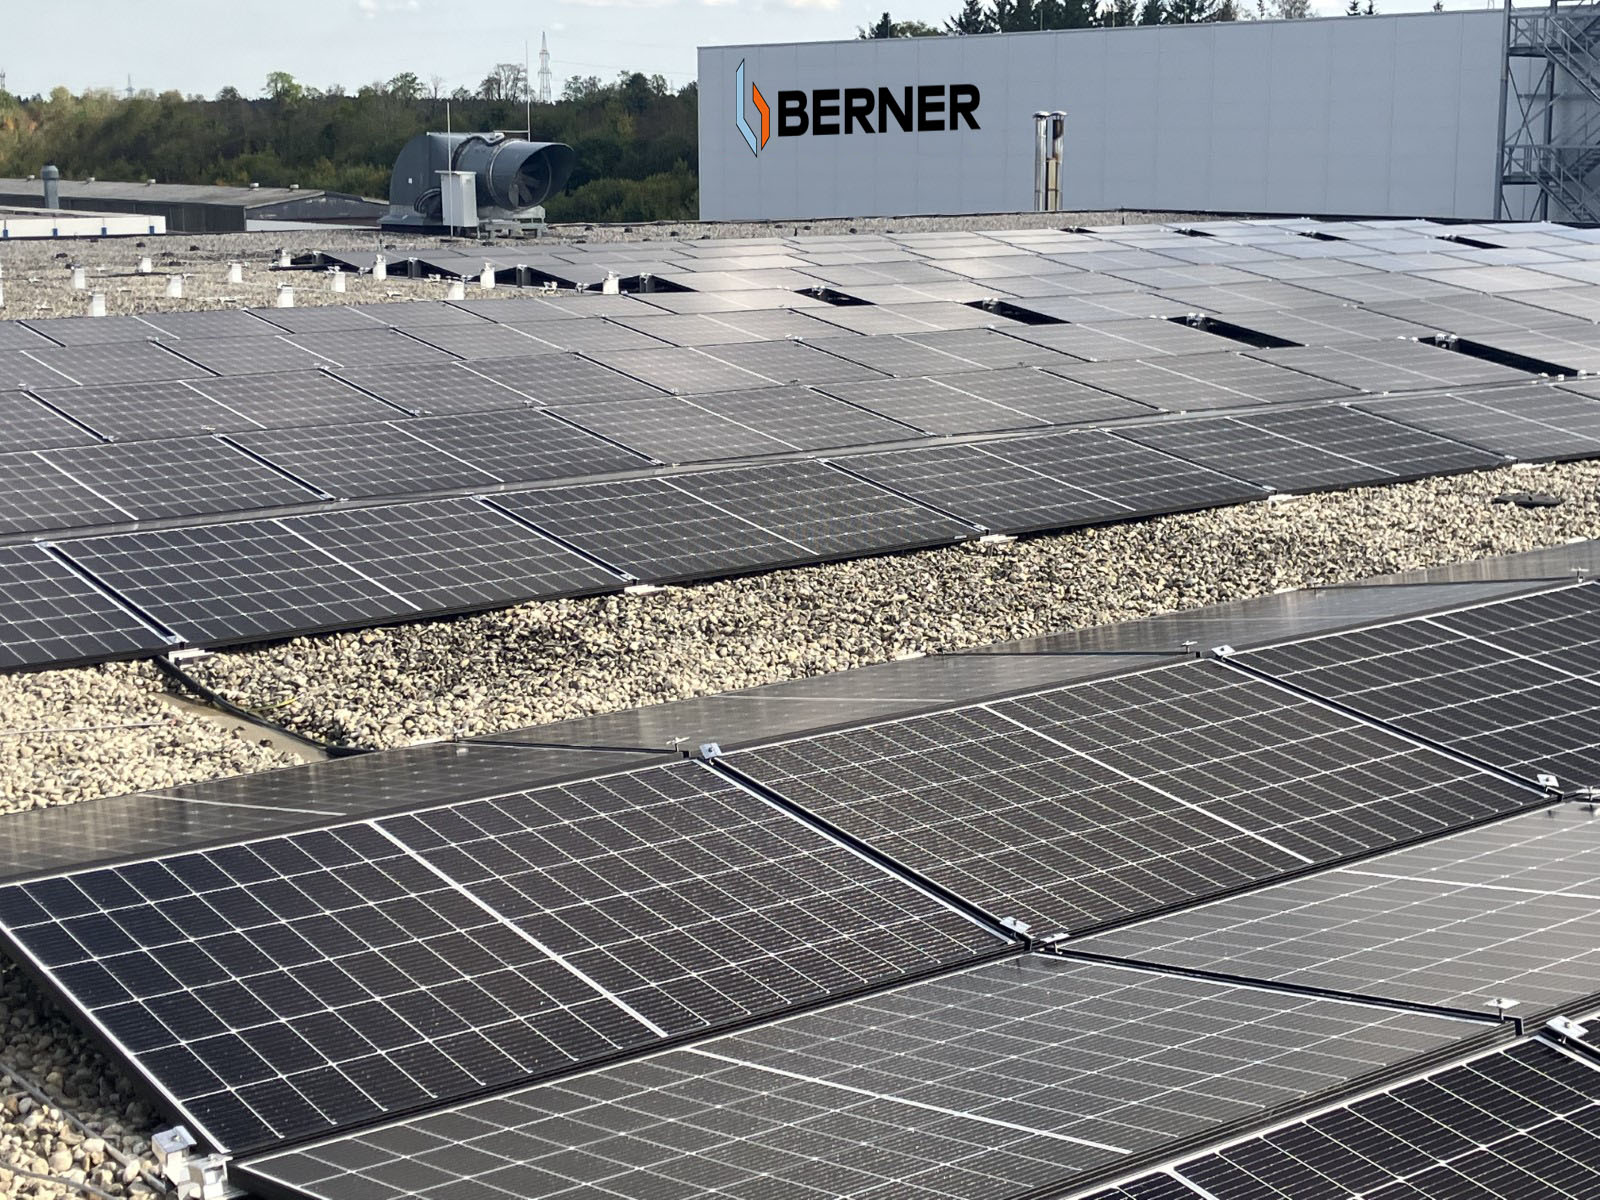 BERNER Group now CO2-neutral Berner Group